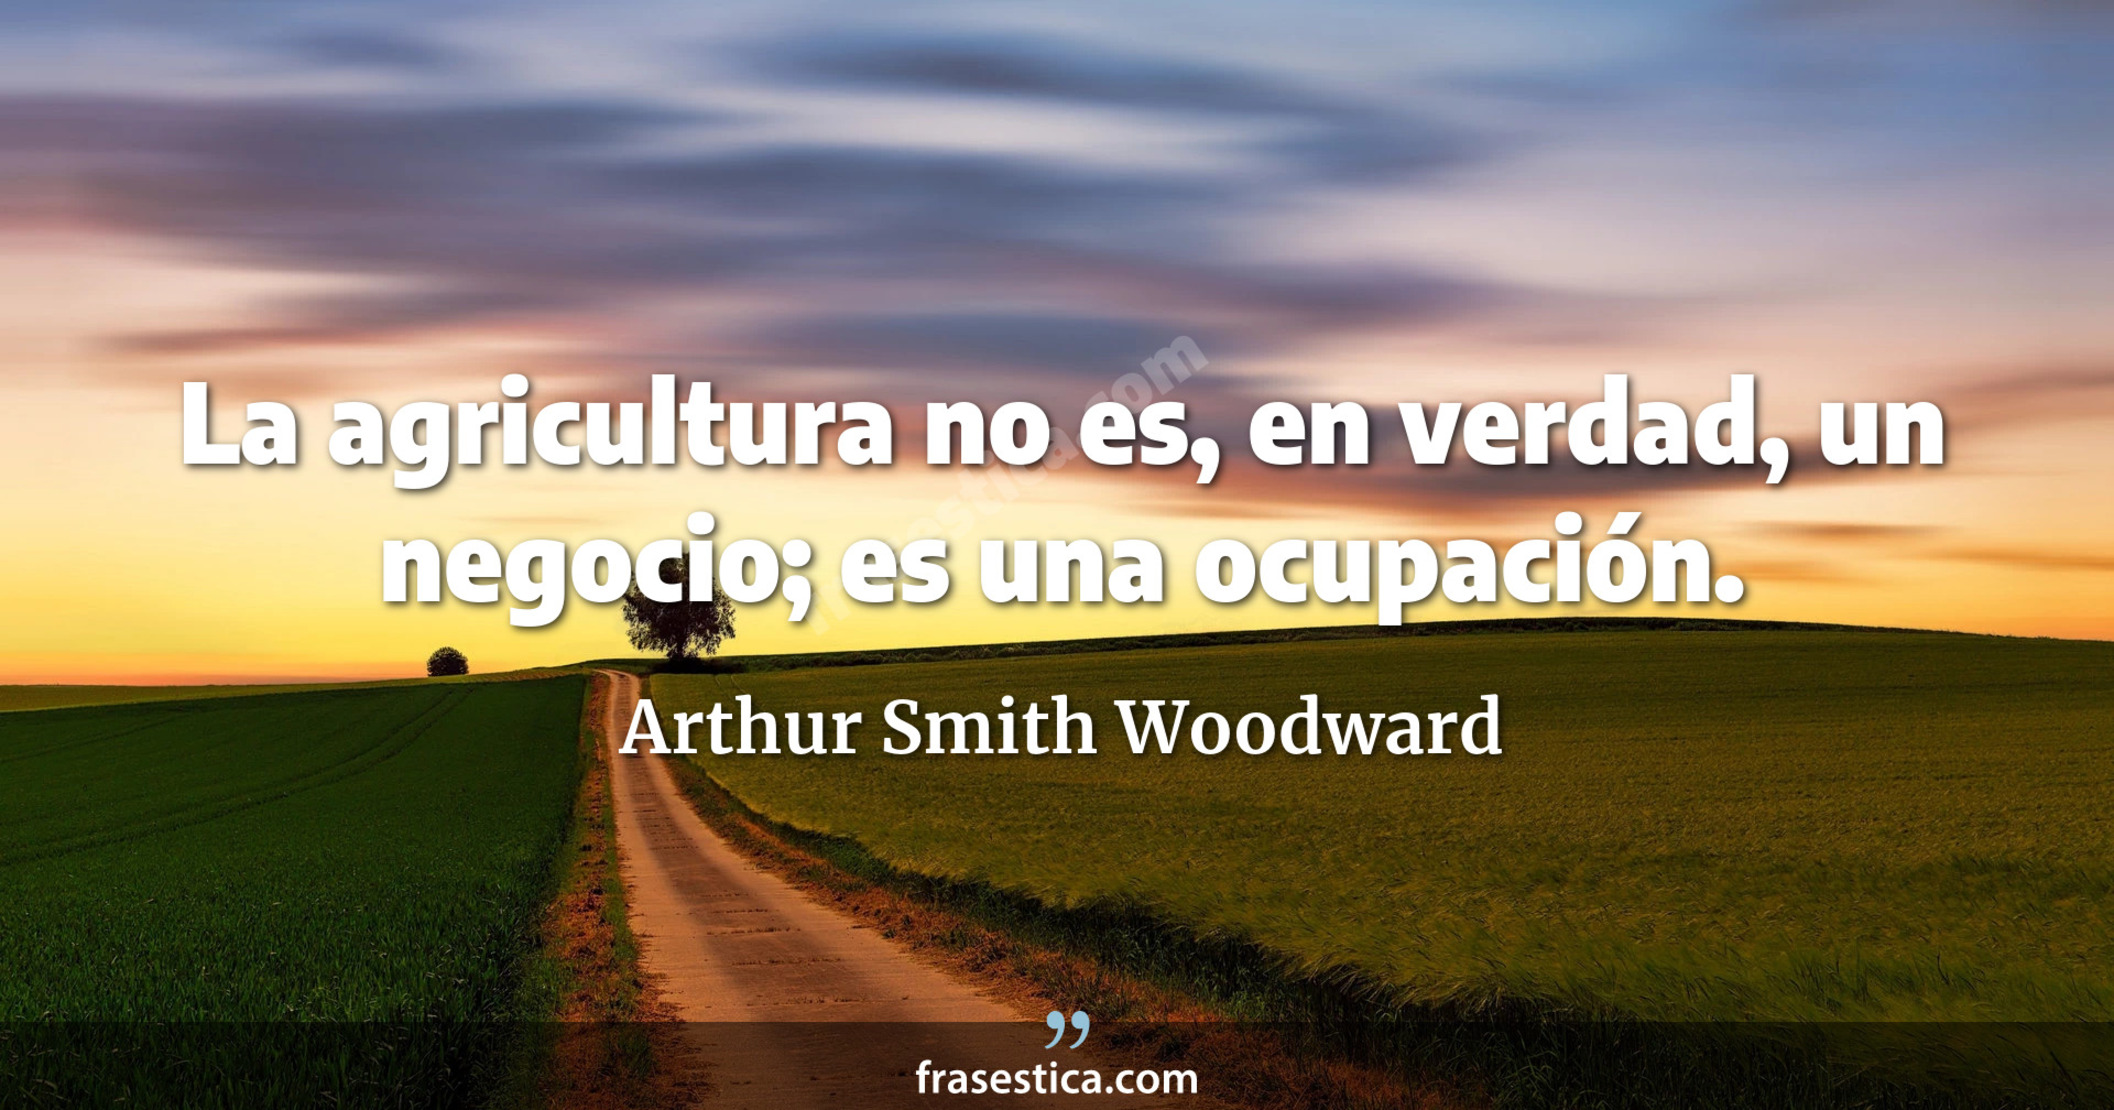 La agricultura no es, en verdad, un negocio; es una ocupación. - Arthur Smith Woodward